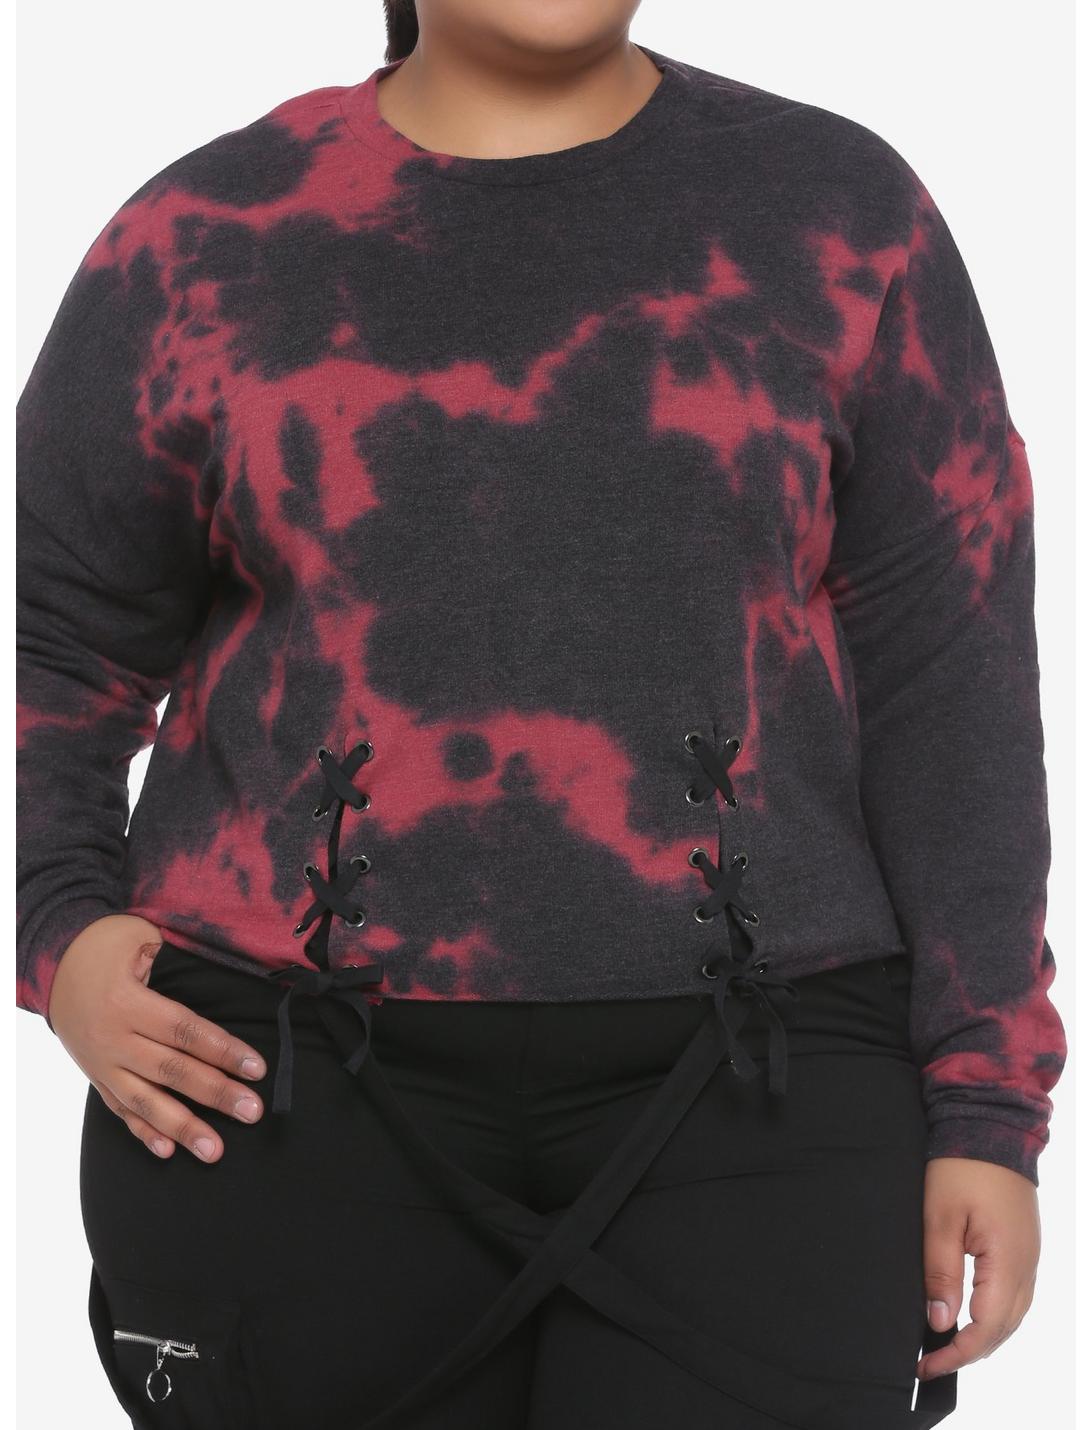 Red & Black Tie-Dye Lace-Up Girls Sweatshirt, TIE DYE, hi-res